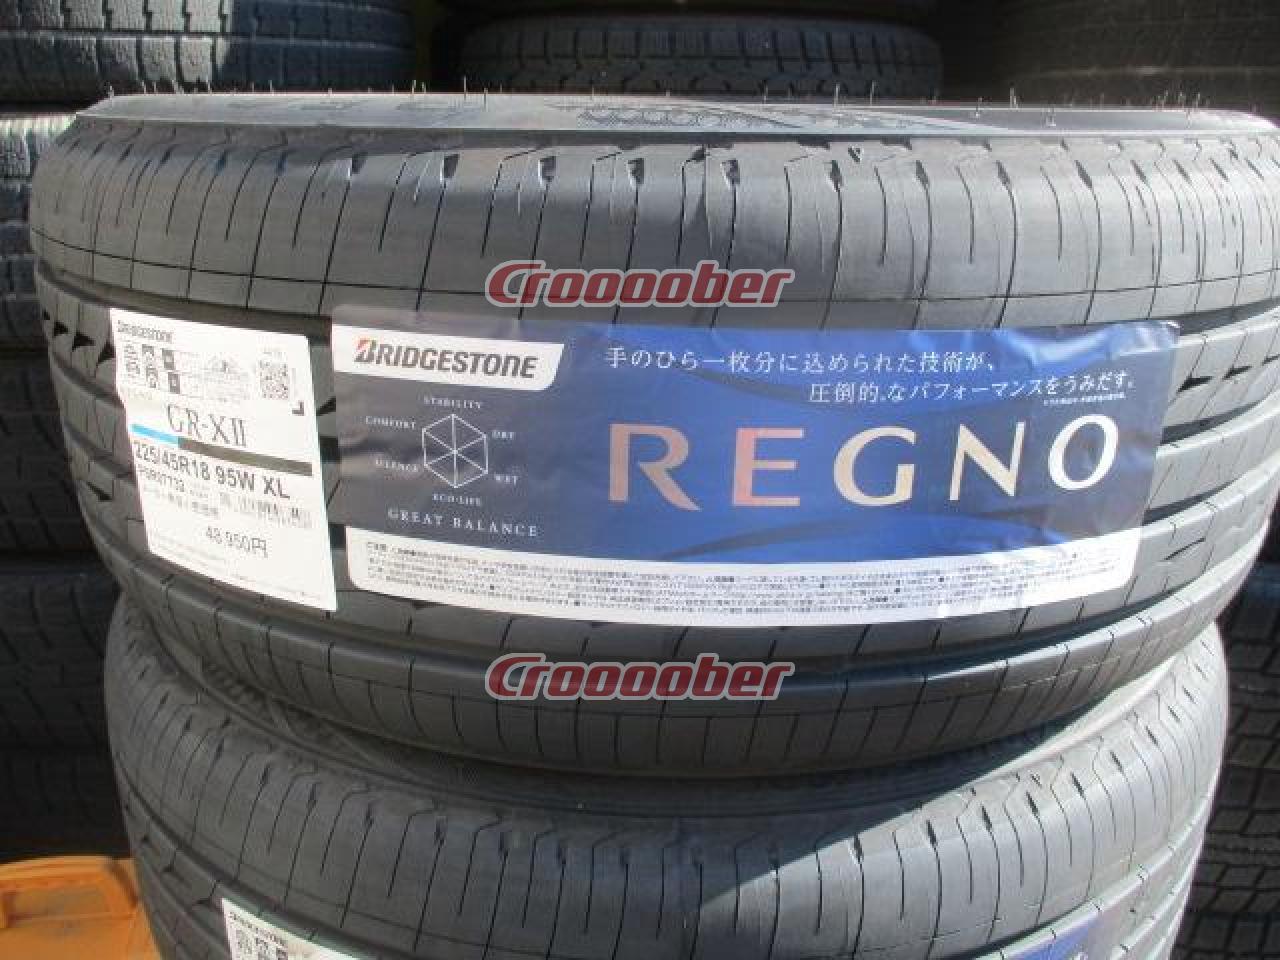 新品[BRIDGESTONE(ブリヂストン) REGNO(レグノ) GR-XII 225/45R18 95W XL [PSR07732]] タイヤ  18インチタイヤパーツの通販なら Croooober(クルーバー)